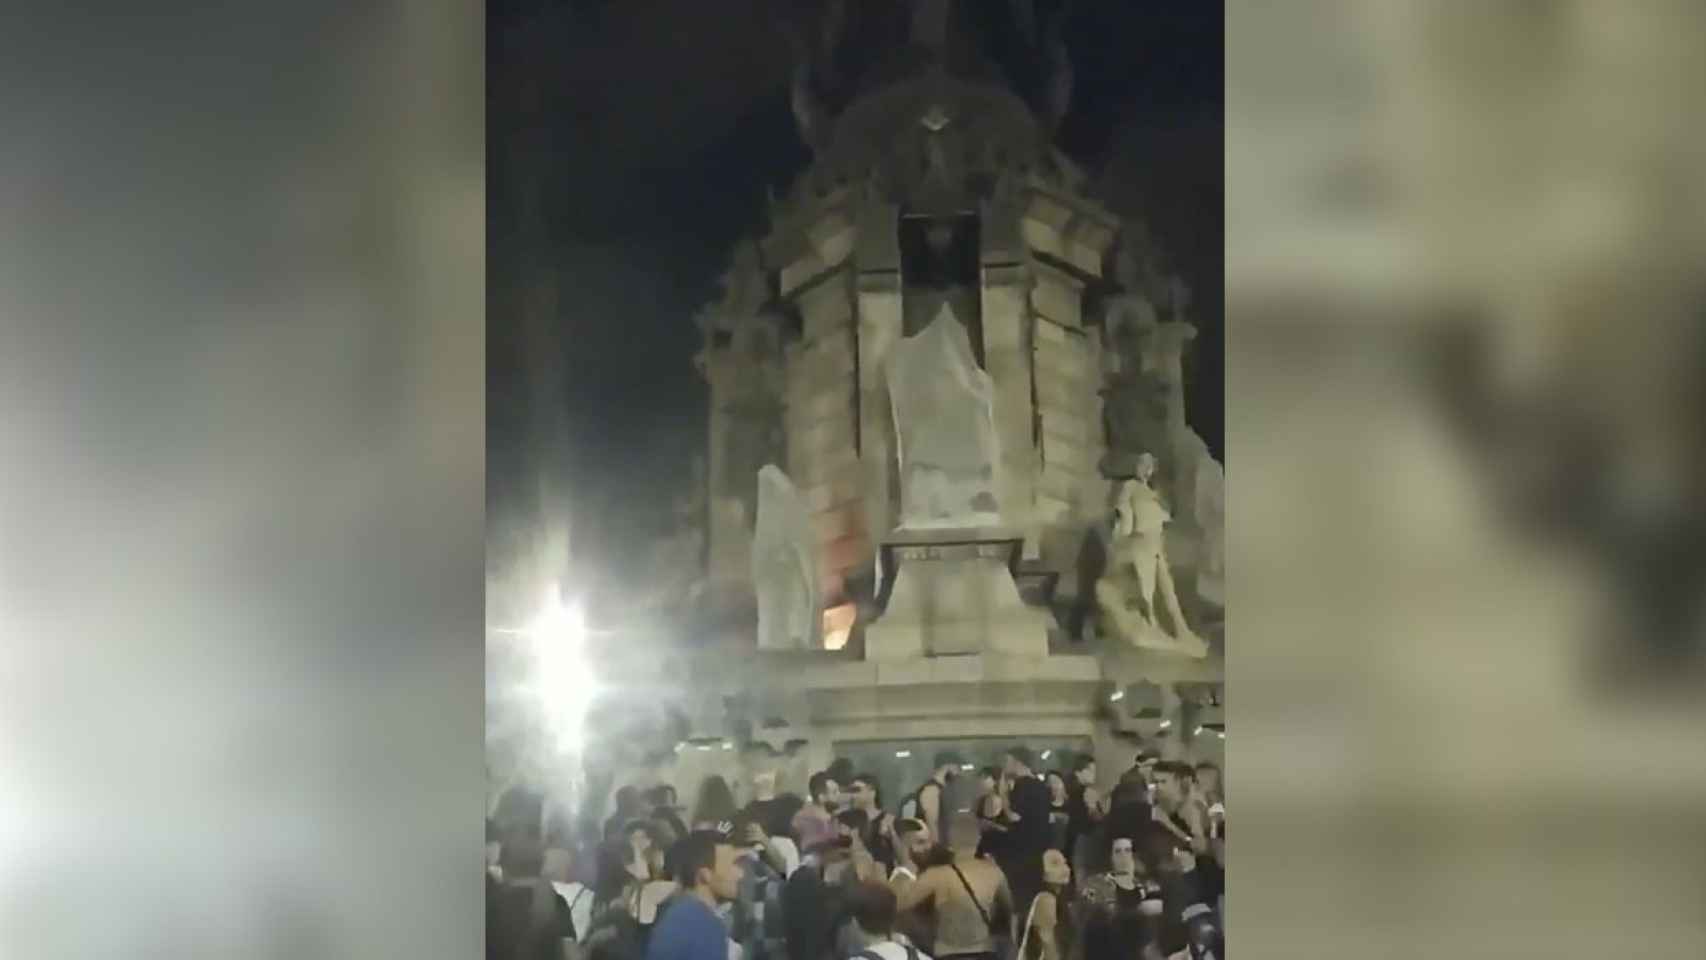 Captura de pantalla del acto vandálico con fuego en el monumento a Colón / METRÓPOLI ABIERTA